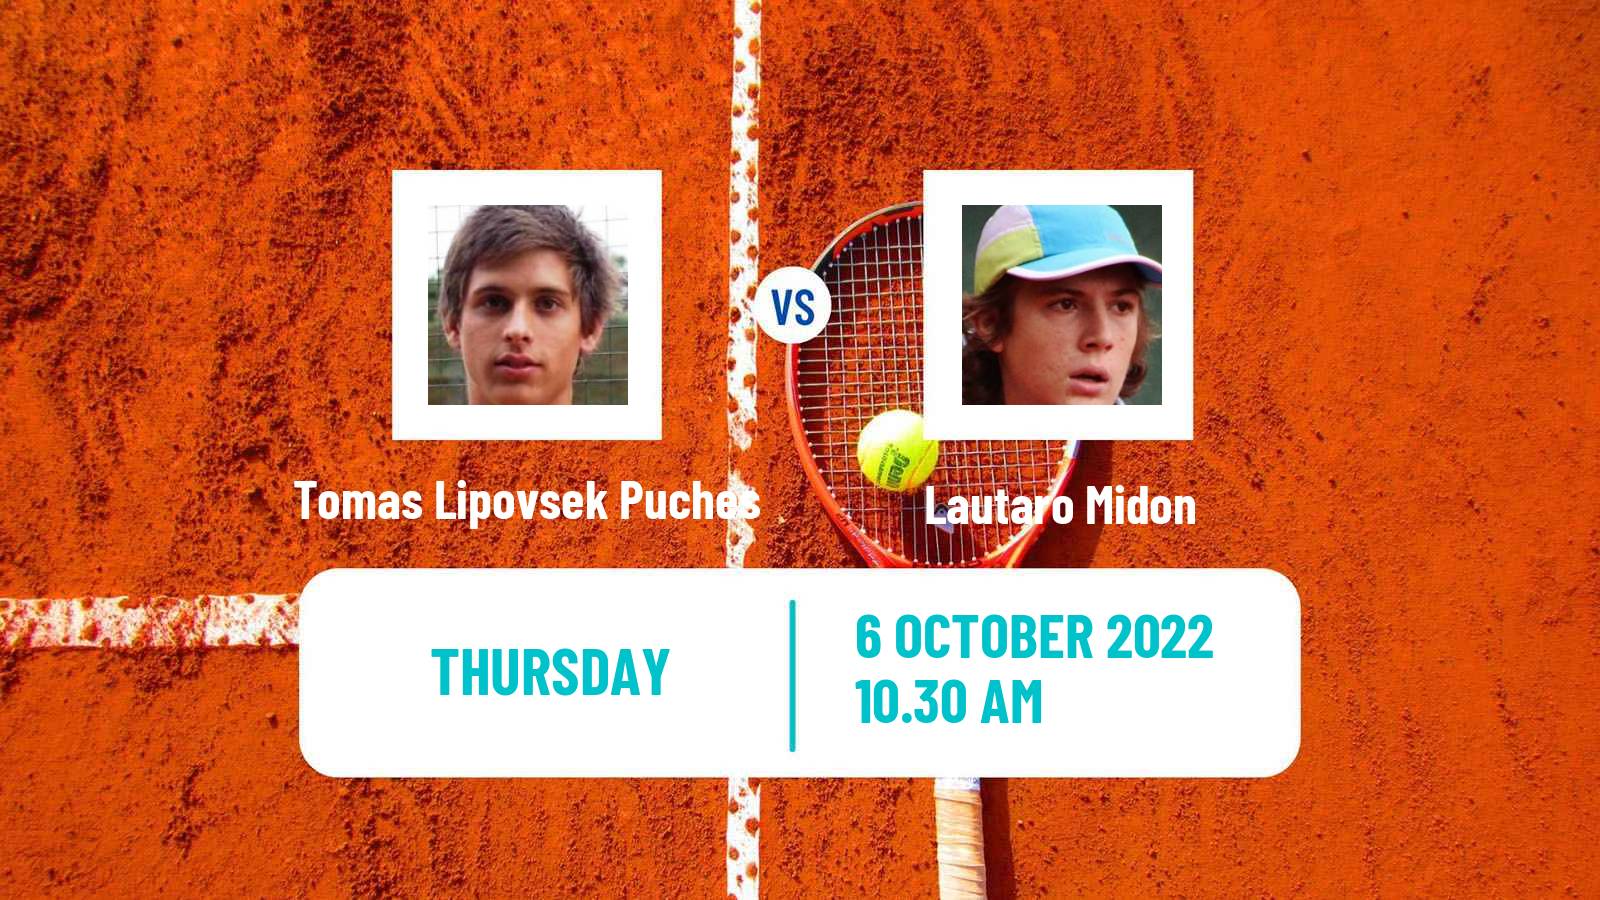 Tennis ITF Tournaments Tomas Lipovsek Puches - Lautaro Midon